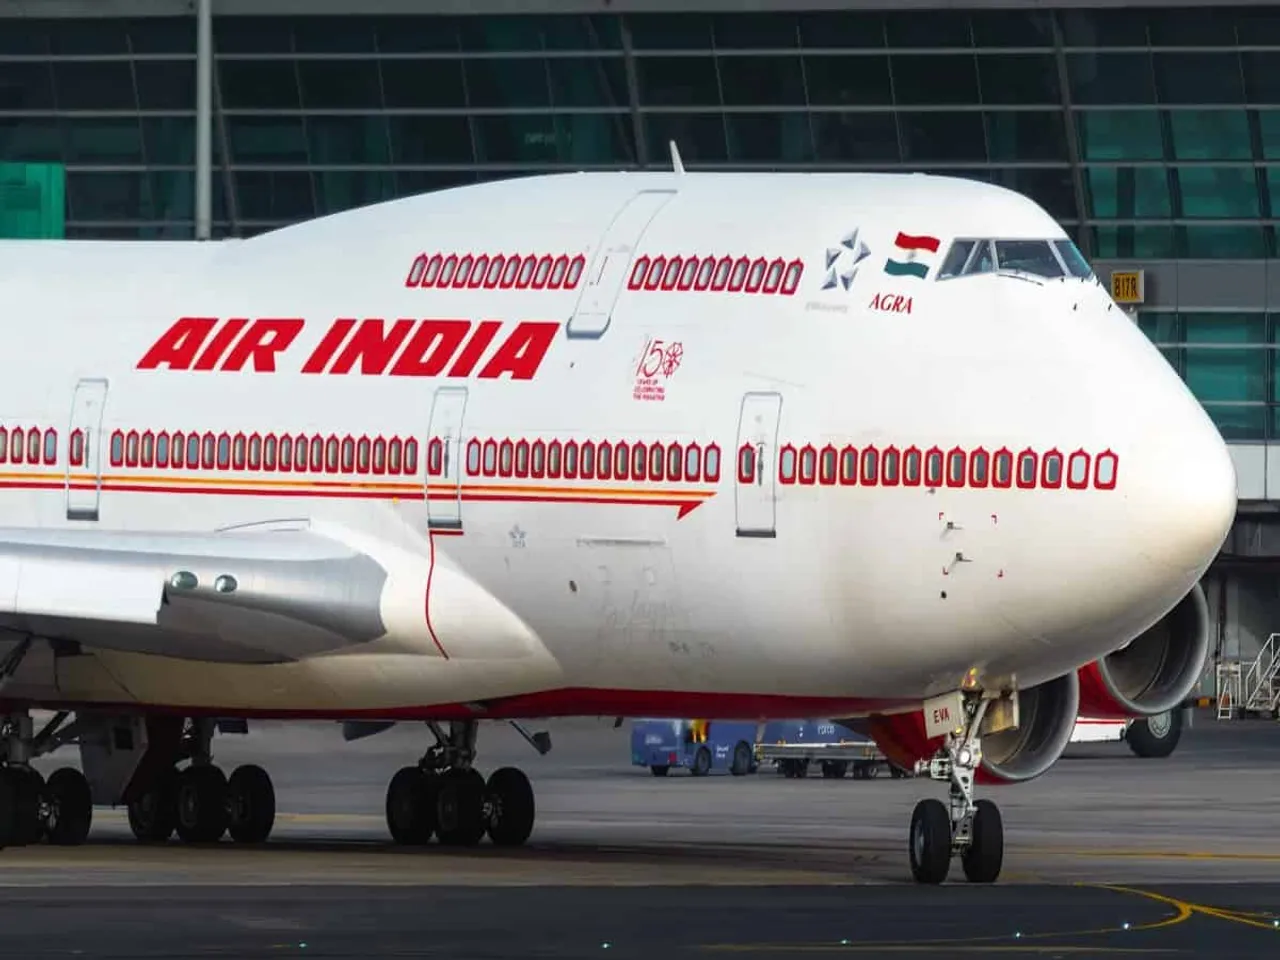 air india Boeing 777-200LR aircraft.jpg